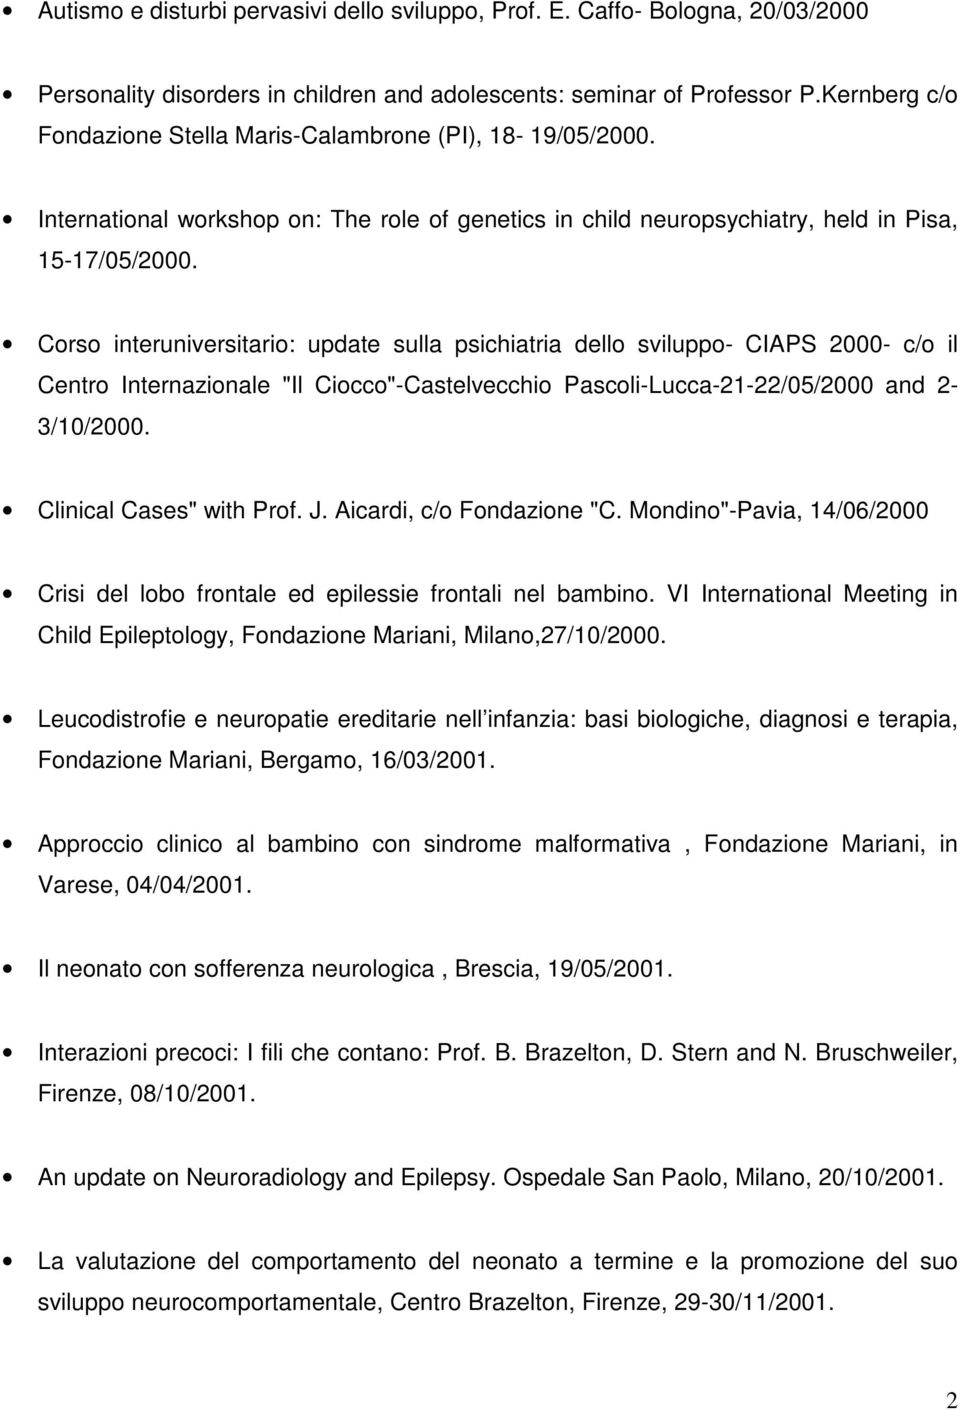 Corso interuniversitario: update sulla psichiatria dello sviluppo- CIAPS 2000- c/o il Centro Internazionale "Il Ciocco"-Castelvecchio Pascoli-Lucca-21-22/05/2000 and 2-3/10/2000.